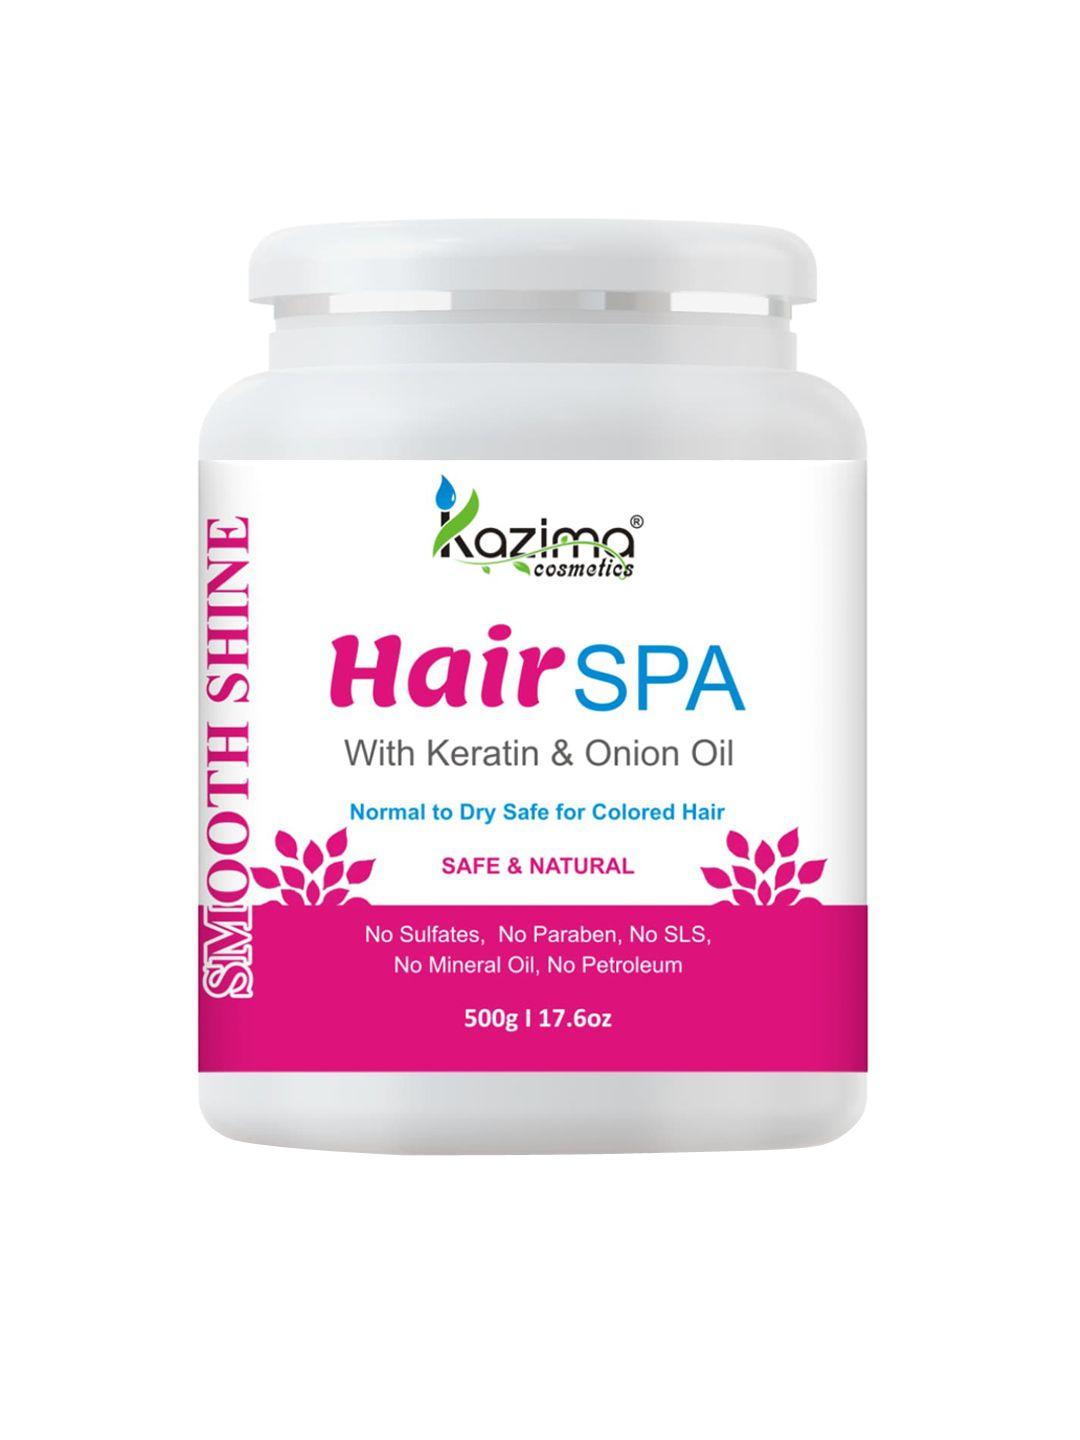 kazima hair spa cream with keratin & onion oil for smooth, shiny & silky hair, 500g